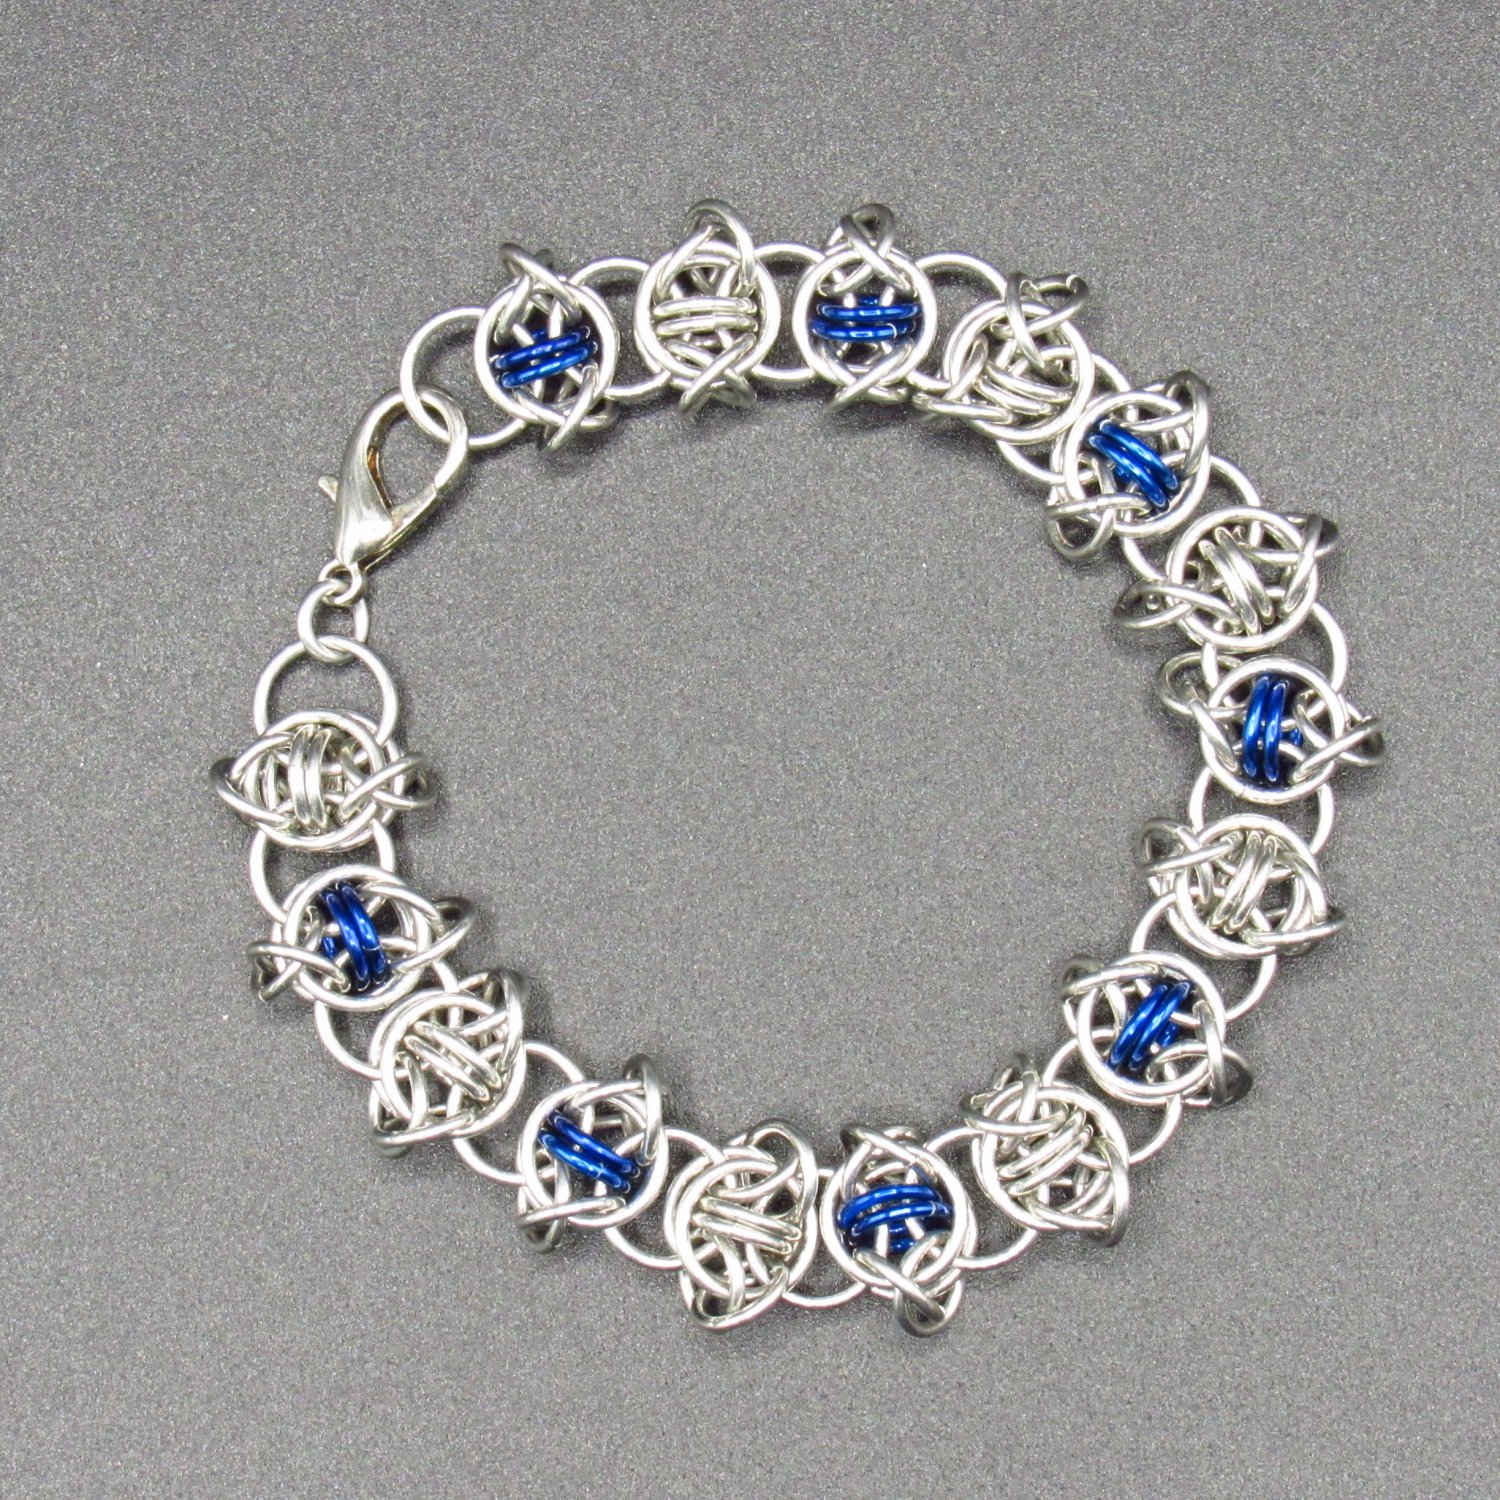 Odin's Eye Bracelet Blue [Item # 724]